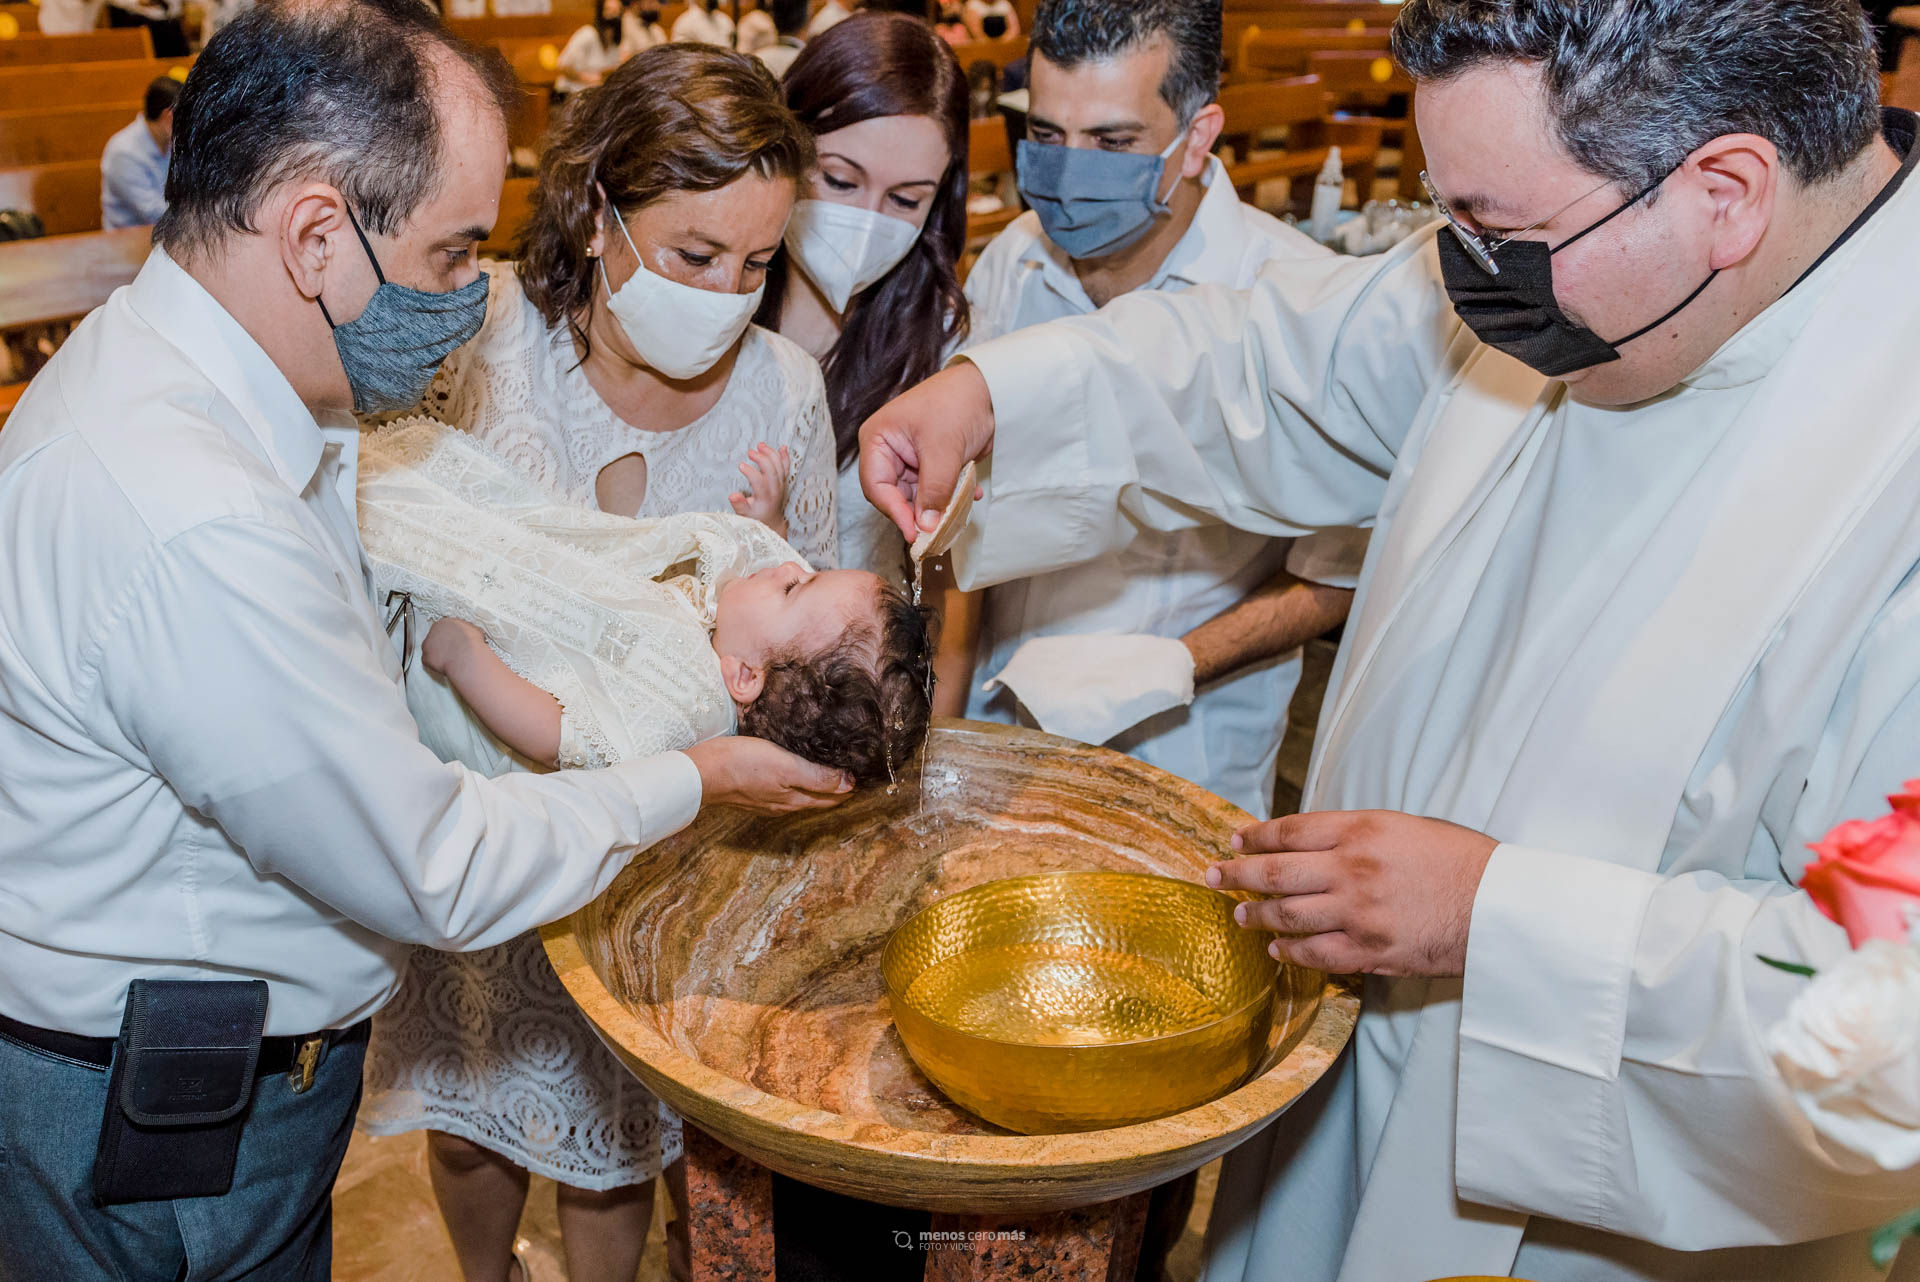 Fotografía de bautizo de Matías en una emotiva ceremonia en Monterrey. Fotografía: "menosceromás fotografía".